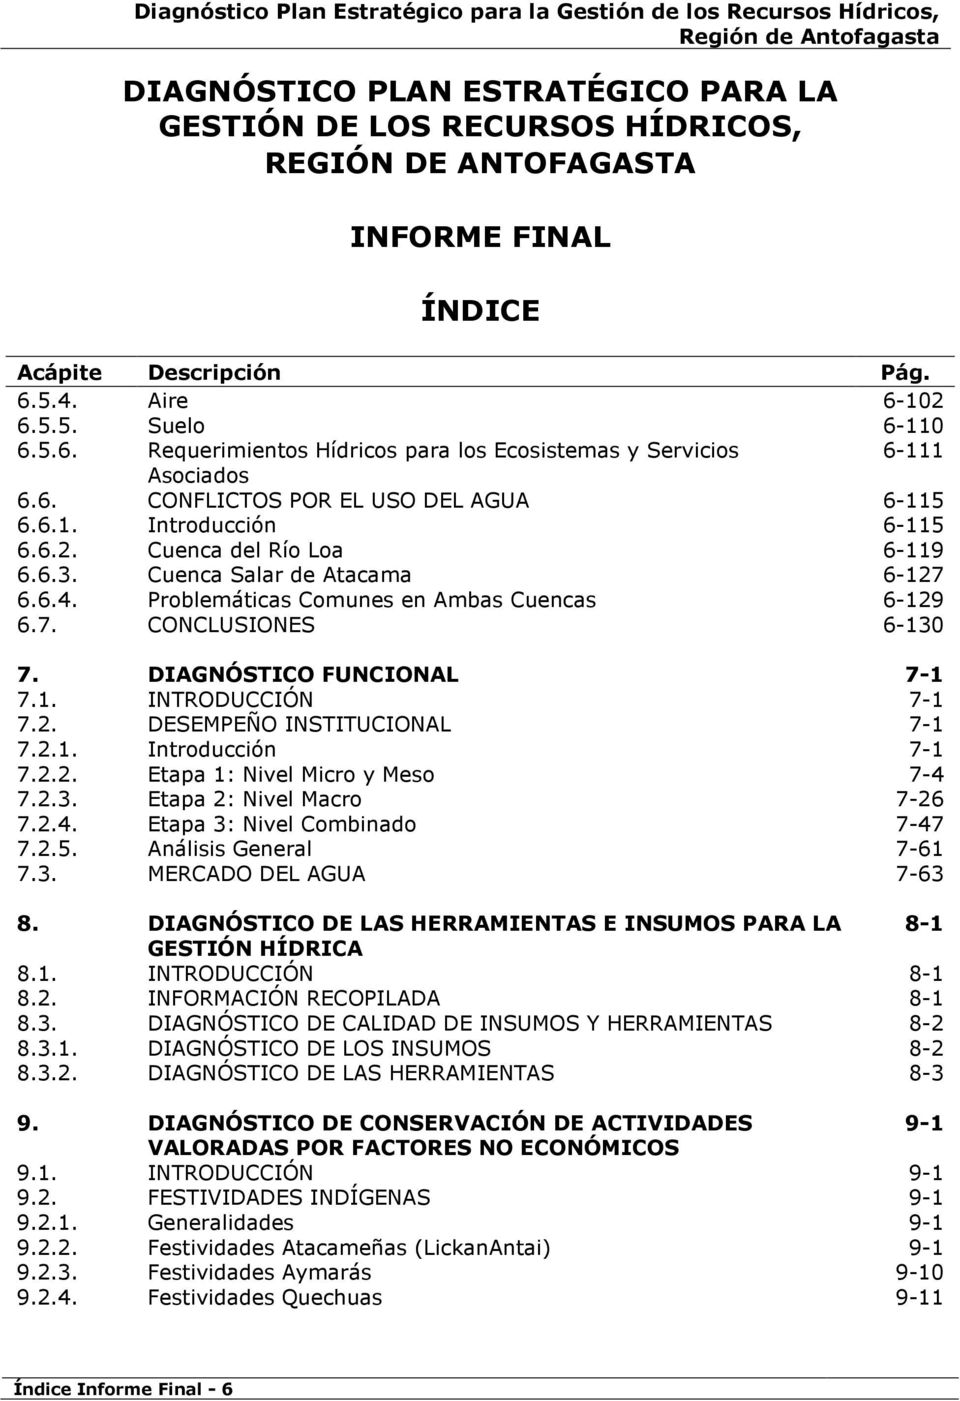 6.3. Cuenca Salar de Atacama 6-127 6.6.4. Problemáticas Comunes en Ambas Cuencas 6-129 6.7. CONCLUSIONES 6-130 7. DIAGNÓSTICO FUNCIONAL 7-1 7.1. INTRODUCCIÓN 7-1 7.2. DESEMPEÑO INSTITUCIONAL 7-1 7.2.1. Introducción 7-1 7.